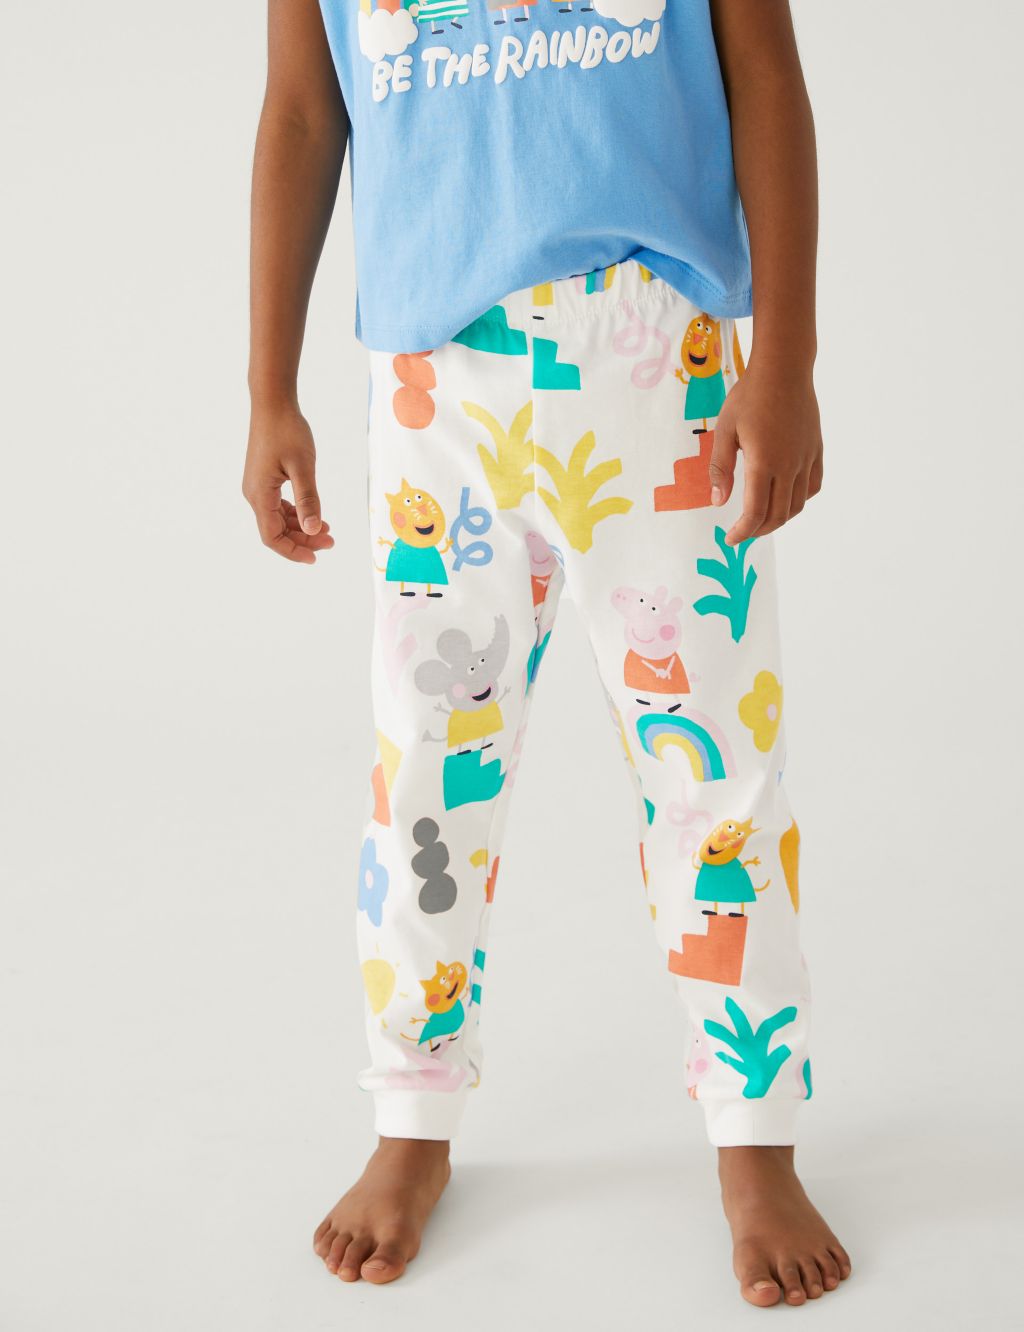 Peppa Pig™ Pyjamas (1-7 Yrs) image 2